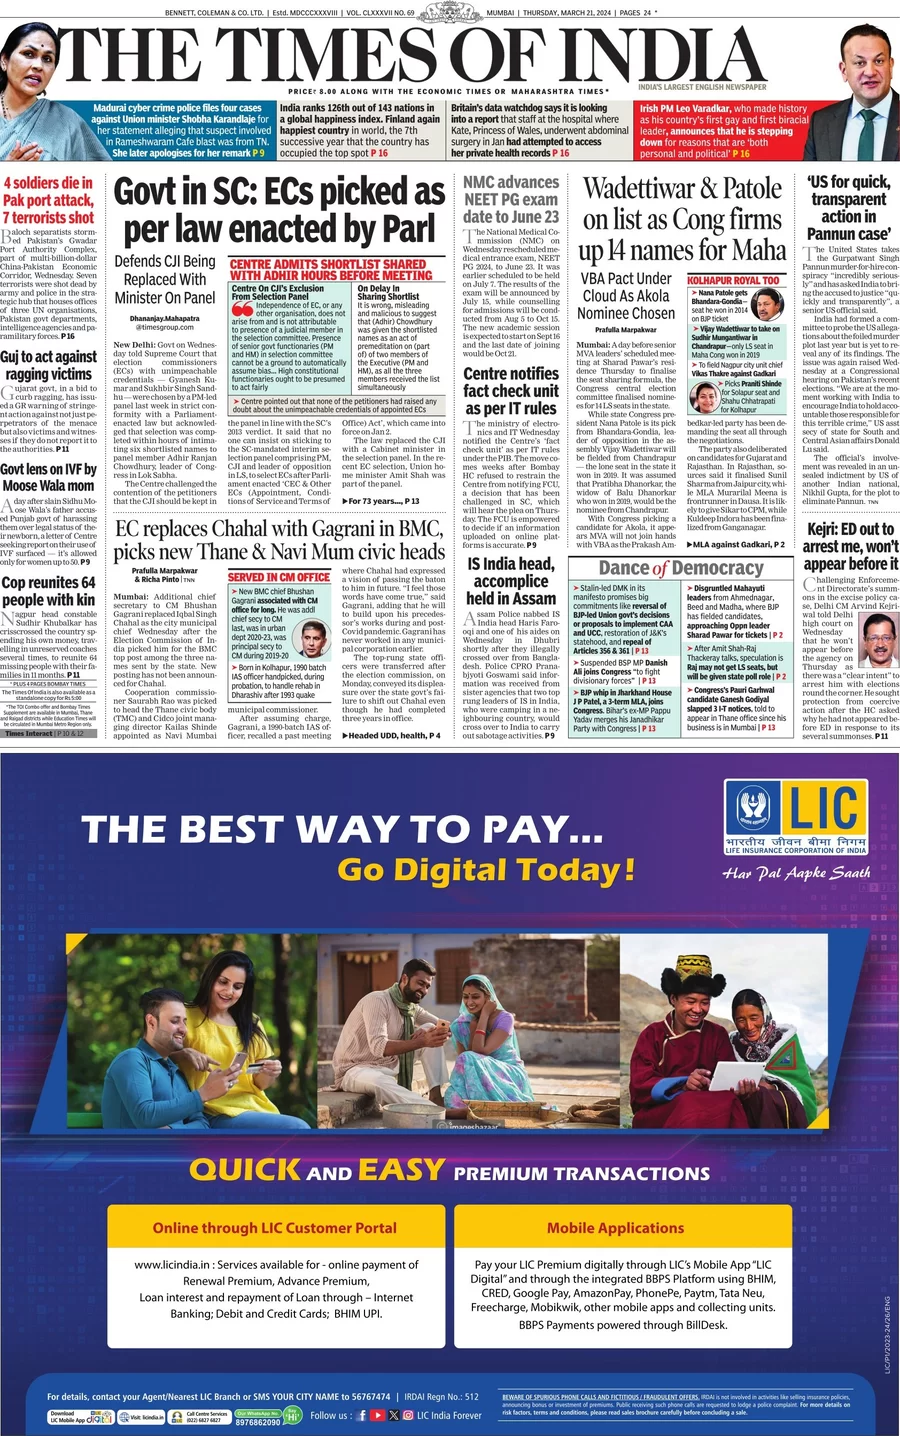 Anteprima prima pagina della rasegna stampa di ieri 2024-03-21 - the-times-of-india/